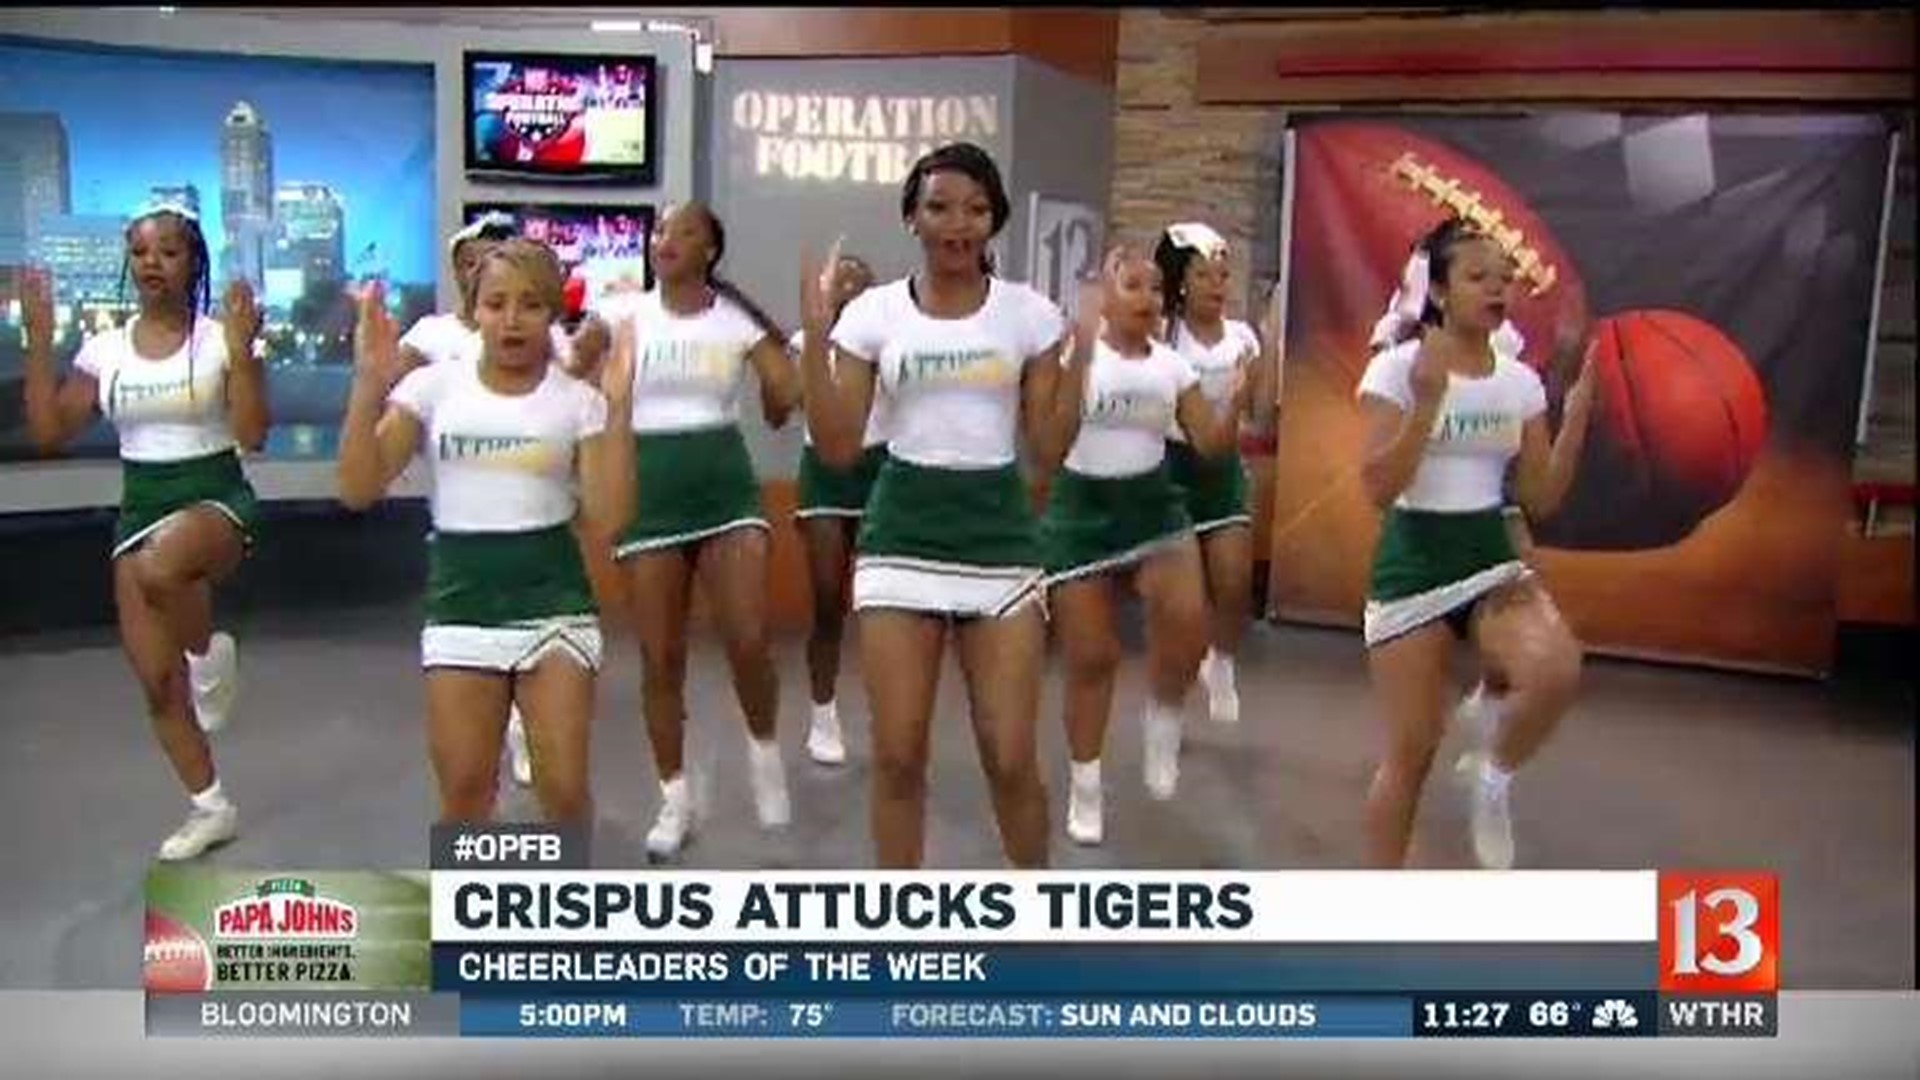 Cheerleaders of the Week: Crispus Attucks